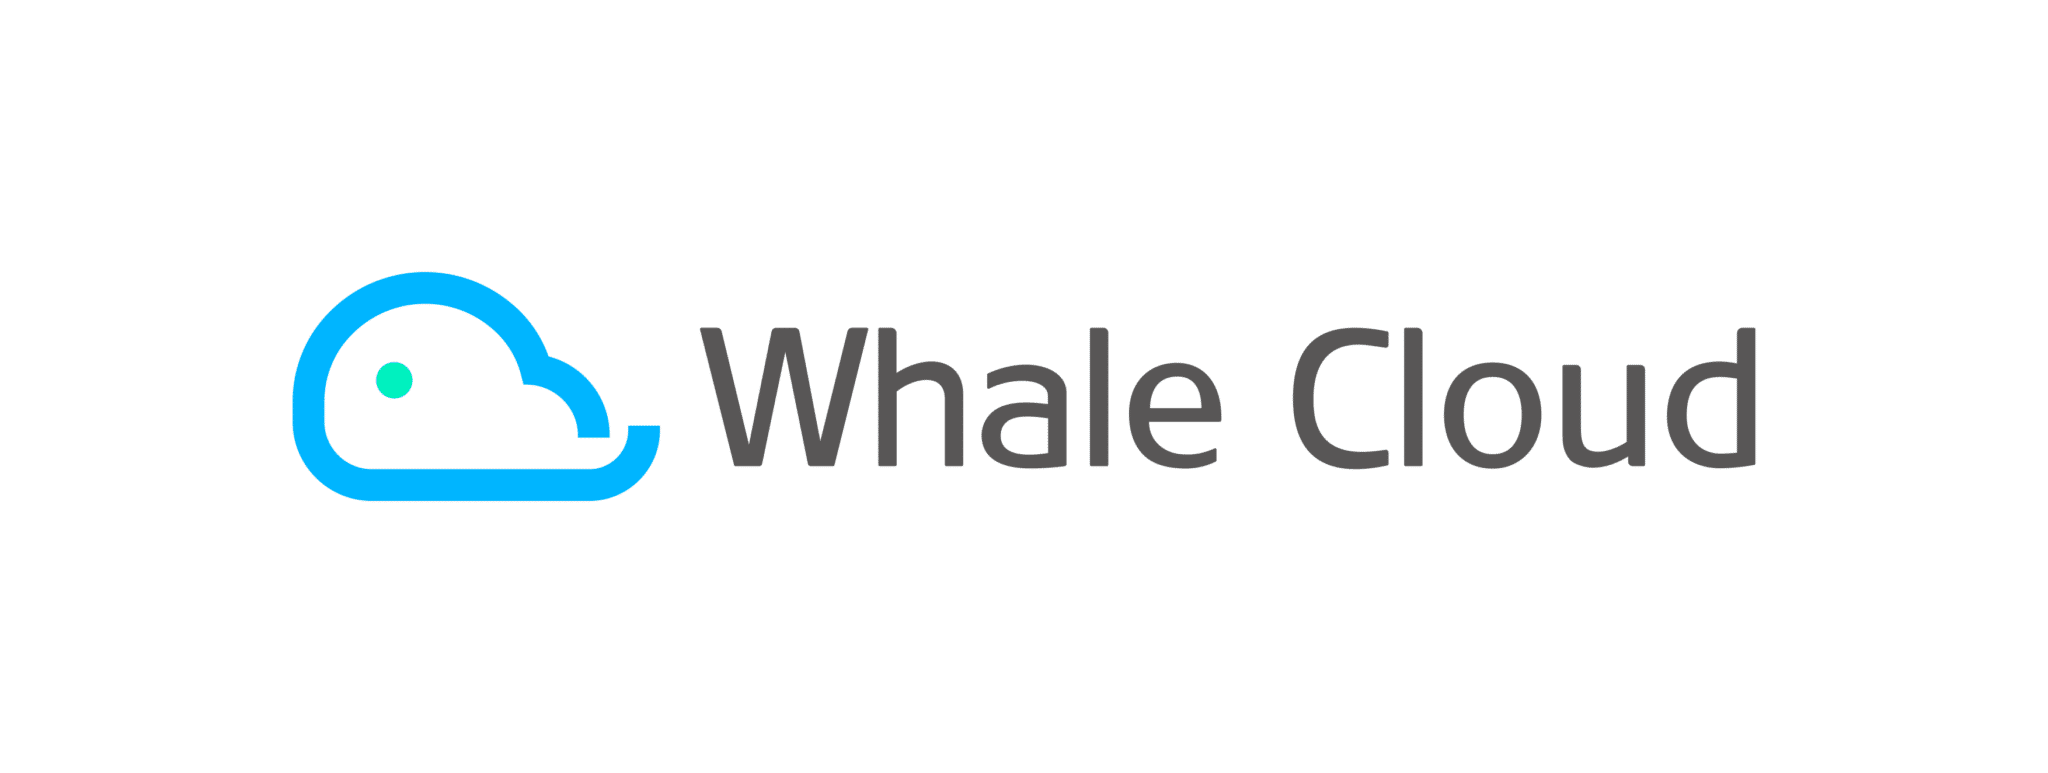 Whale Cloud logo